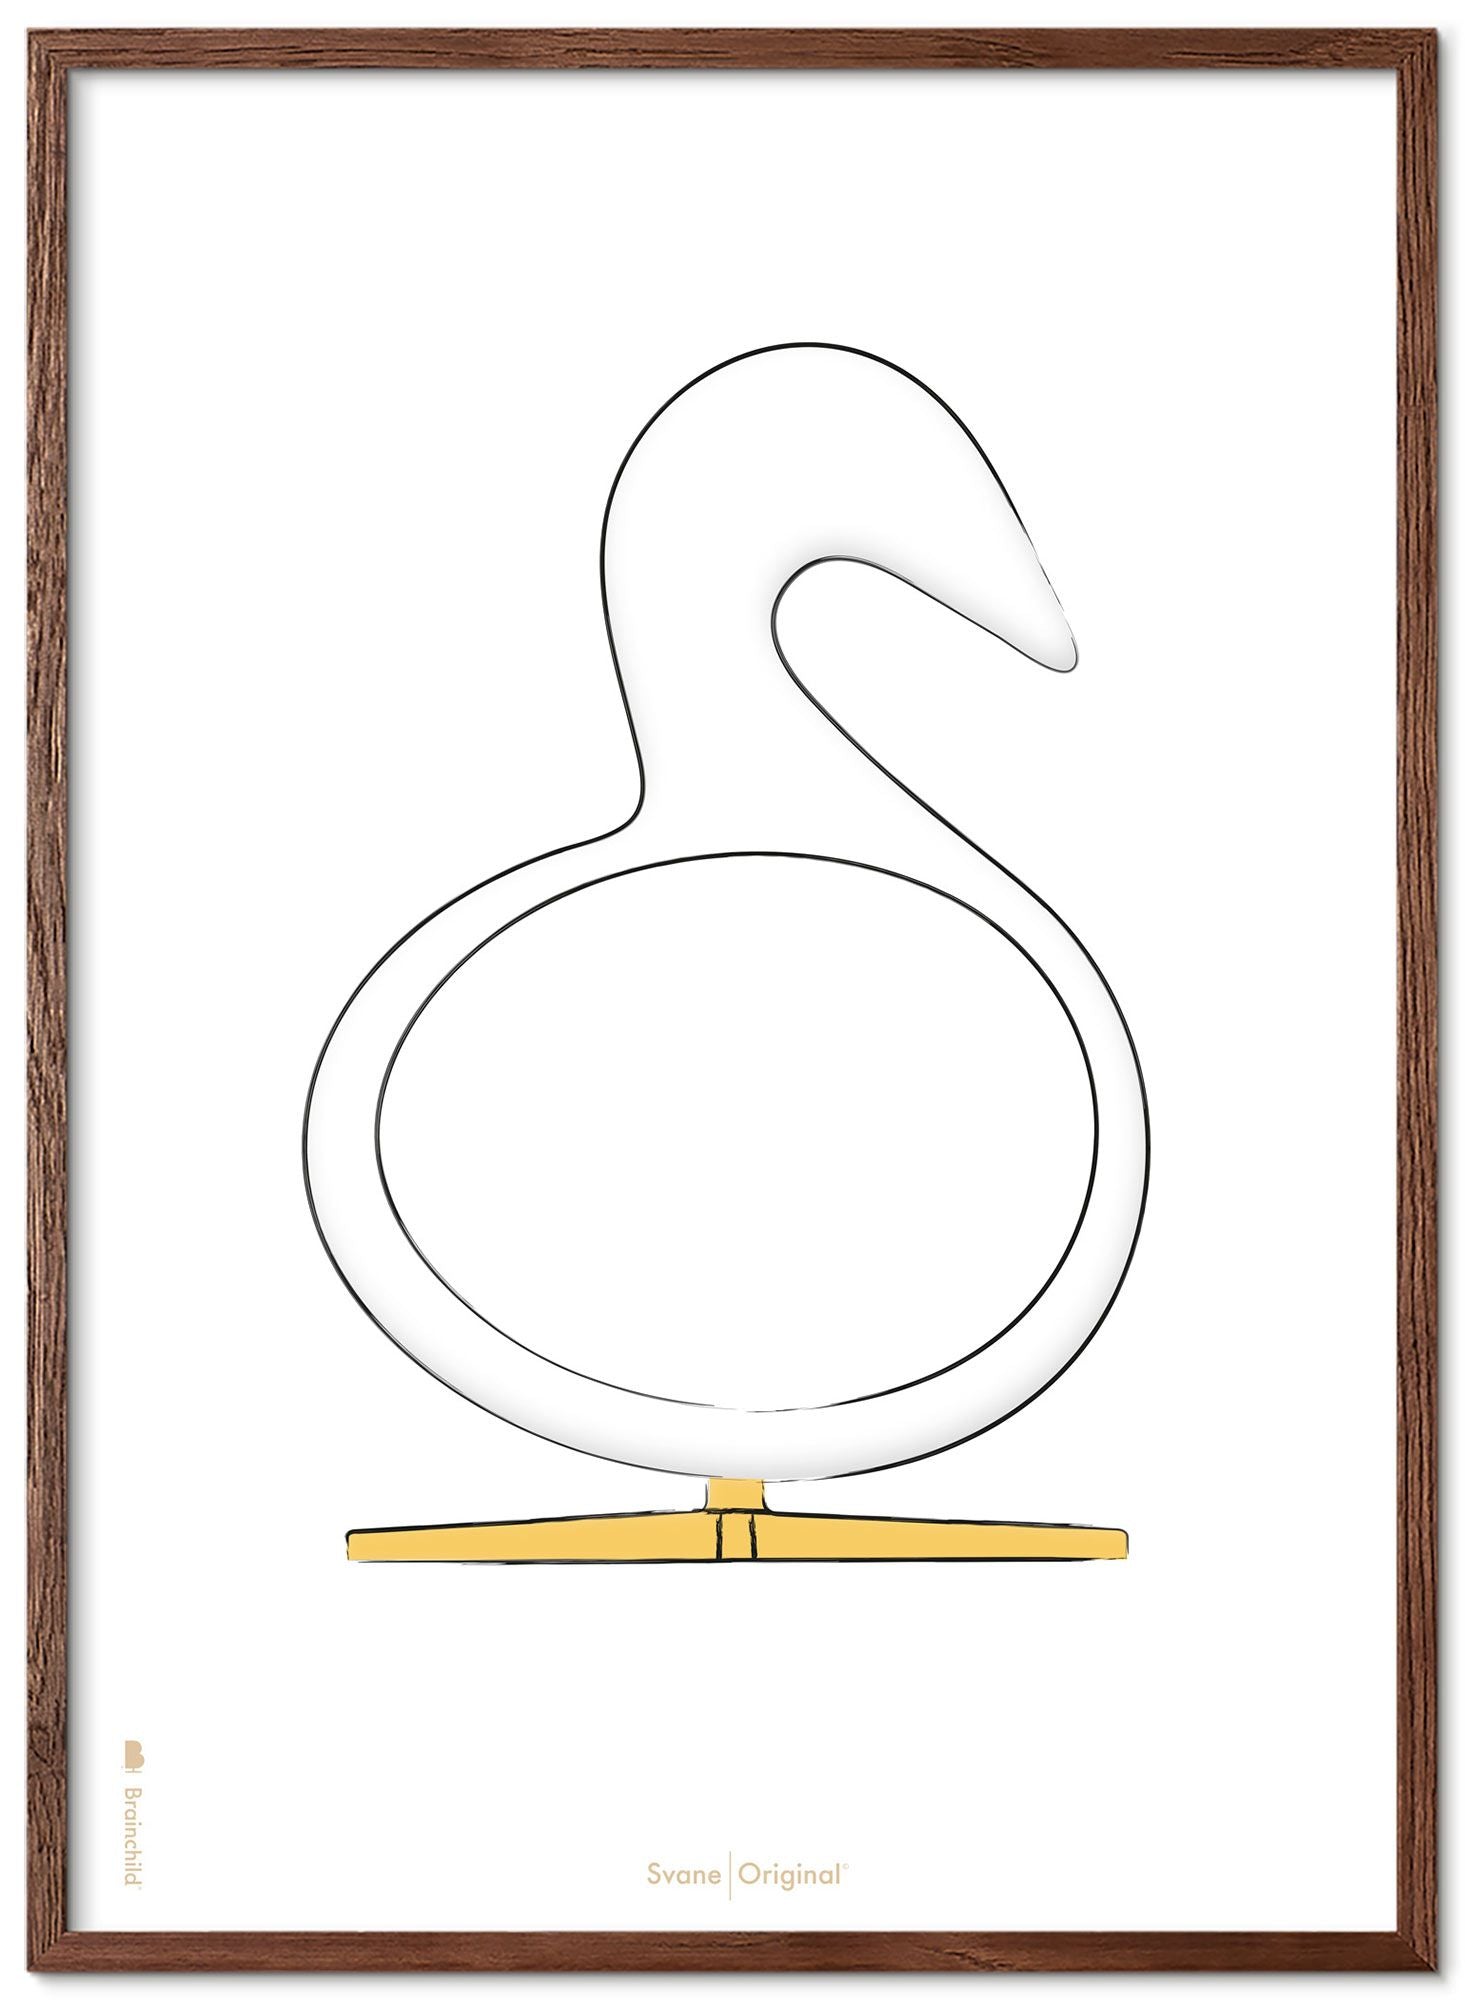 Schema poster di schizzi di disegno del cigno da gioco in legno scuro 70x100 cm, sfondo bianco